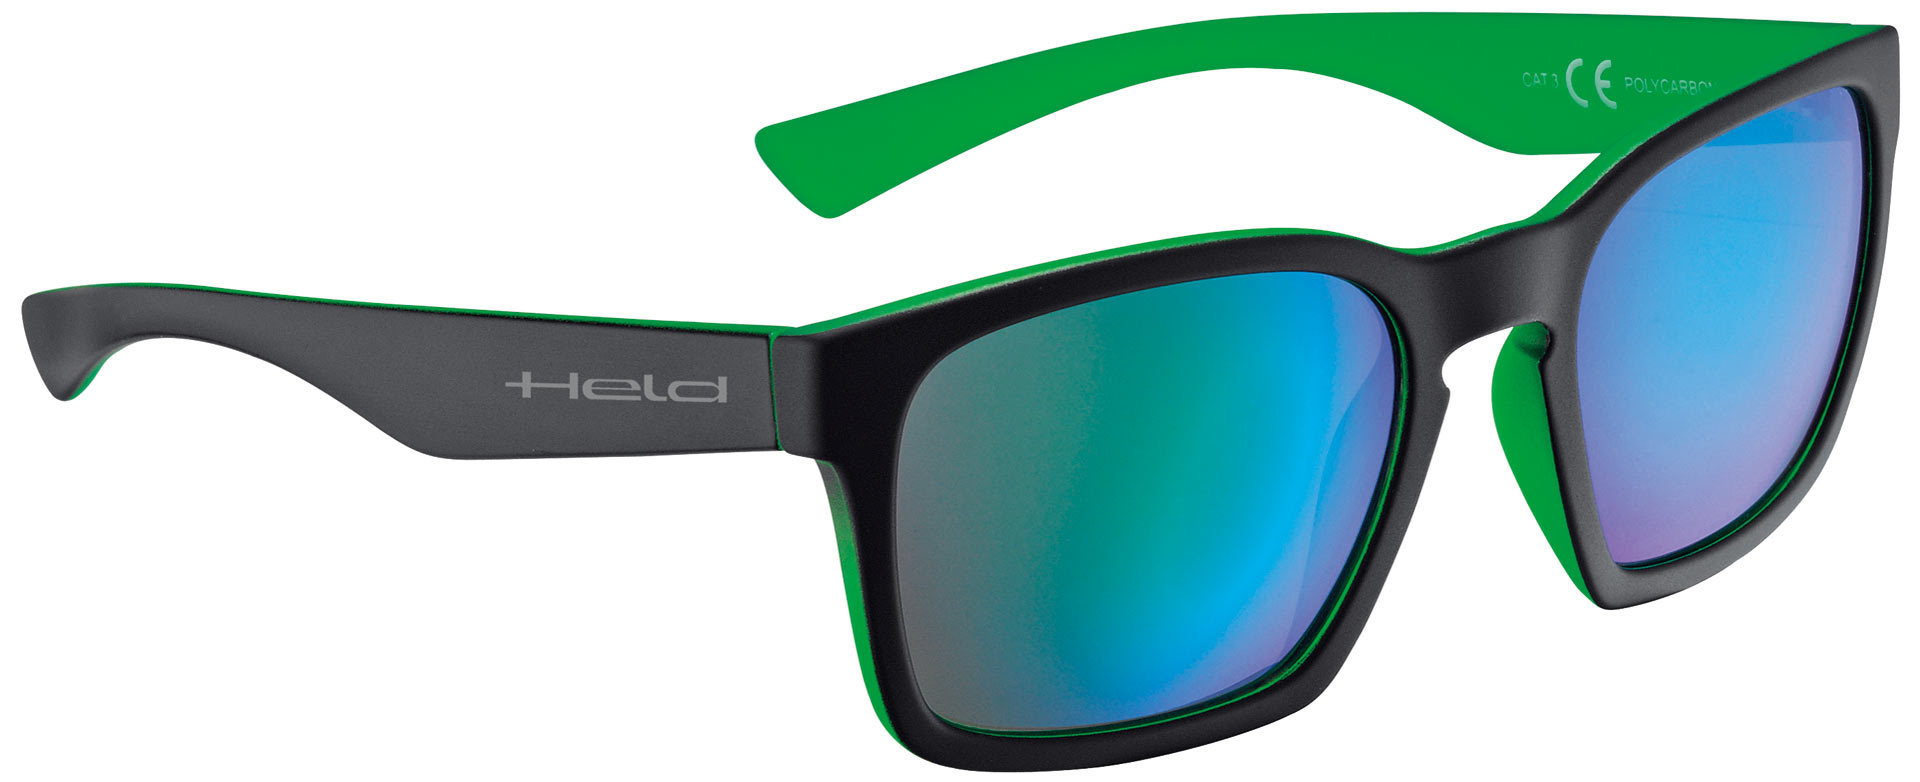 солнцезащитные очки unofficial черный Очки Held 9740 солнцезащитные, черный/зеленый